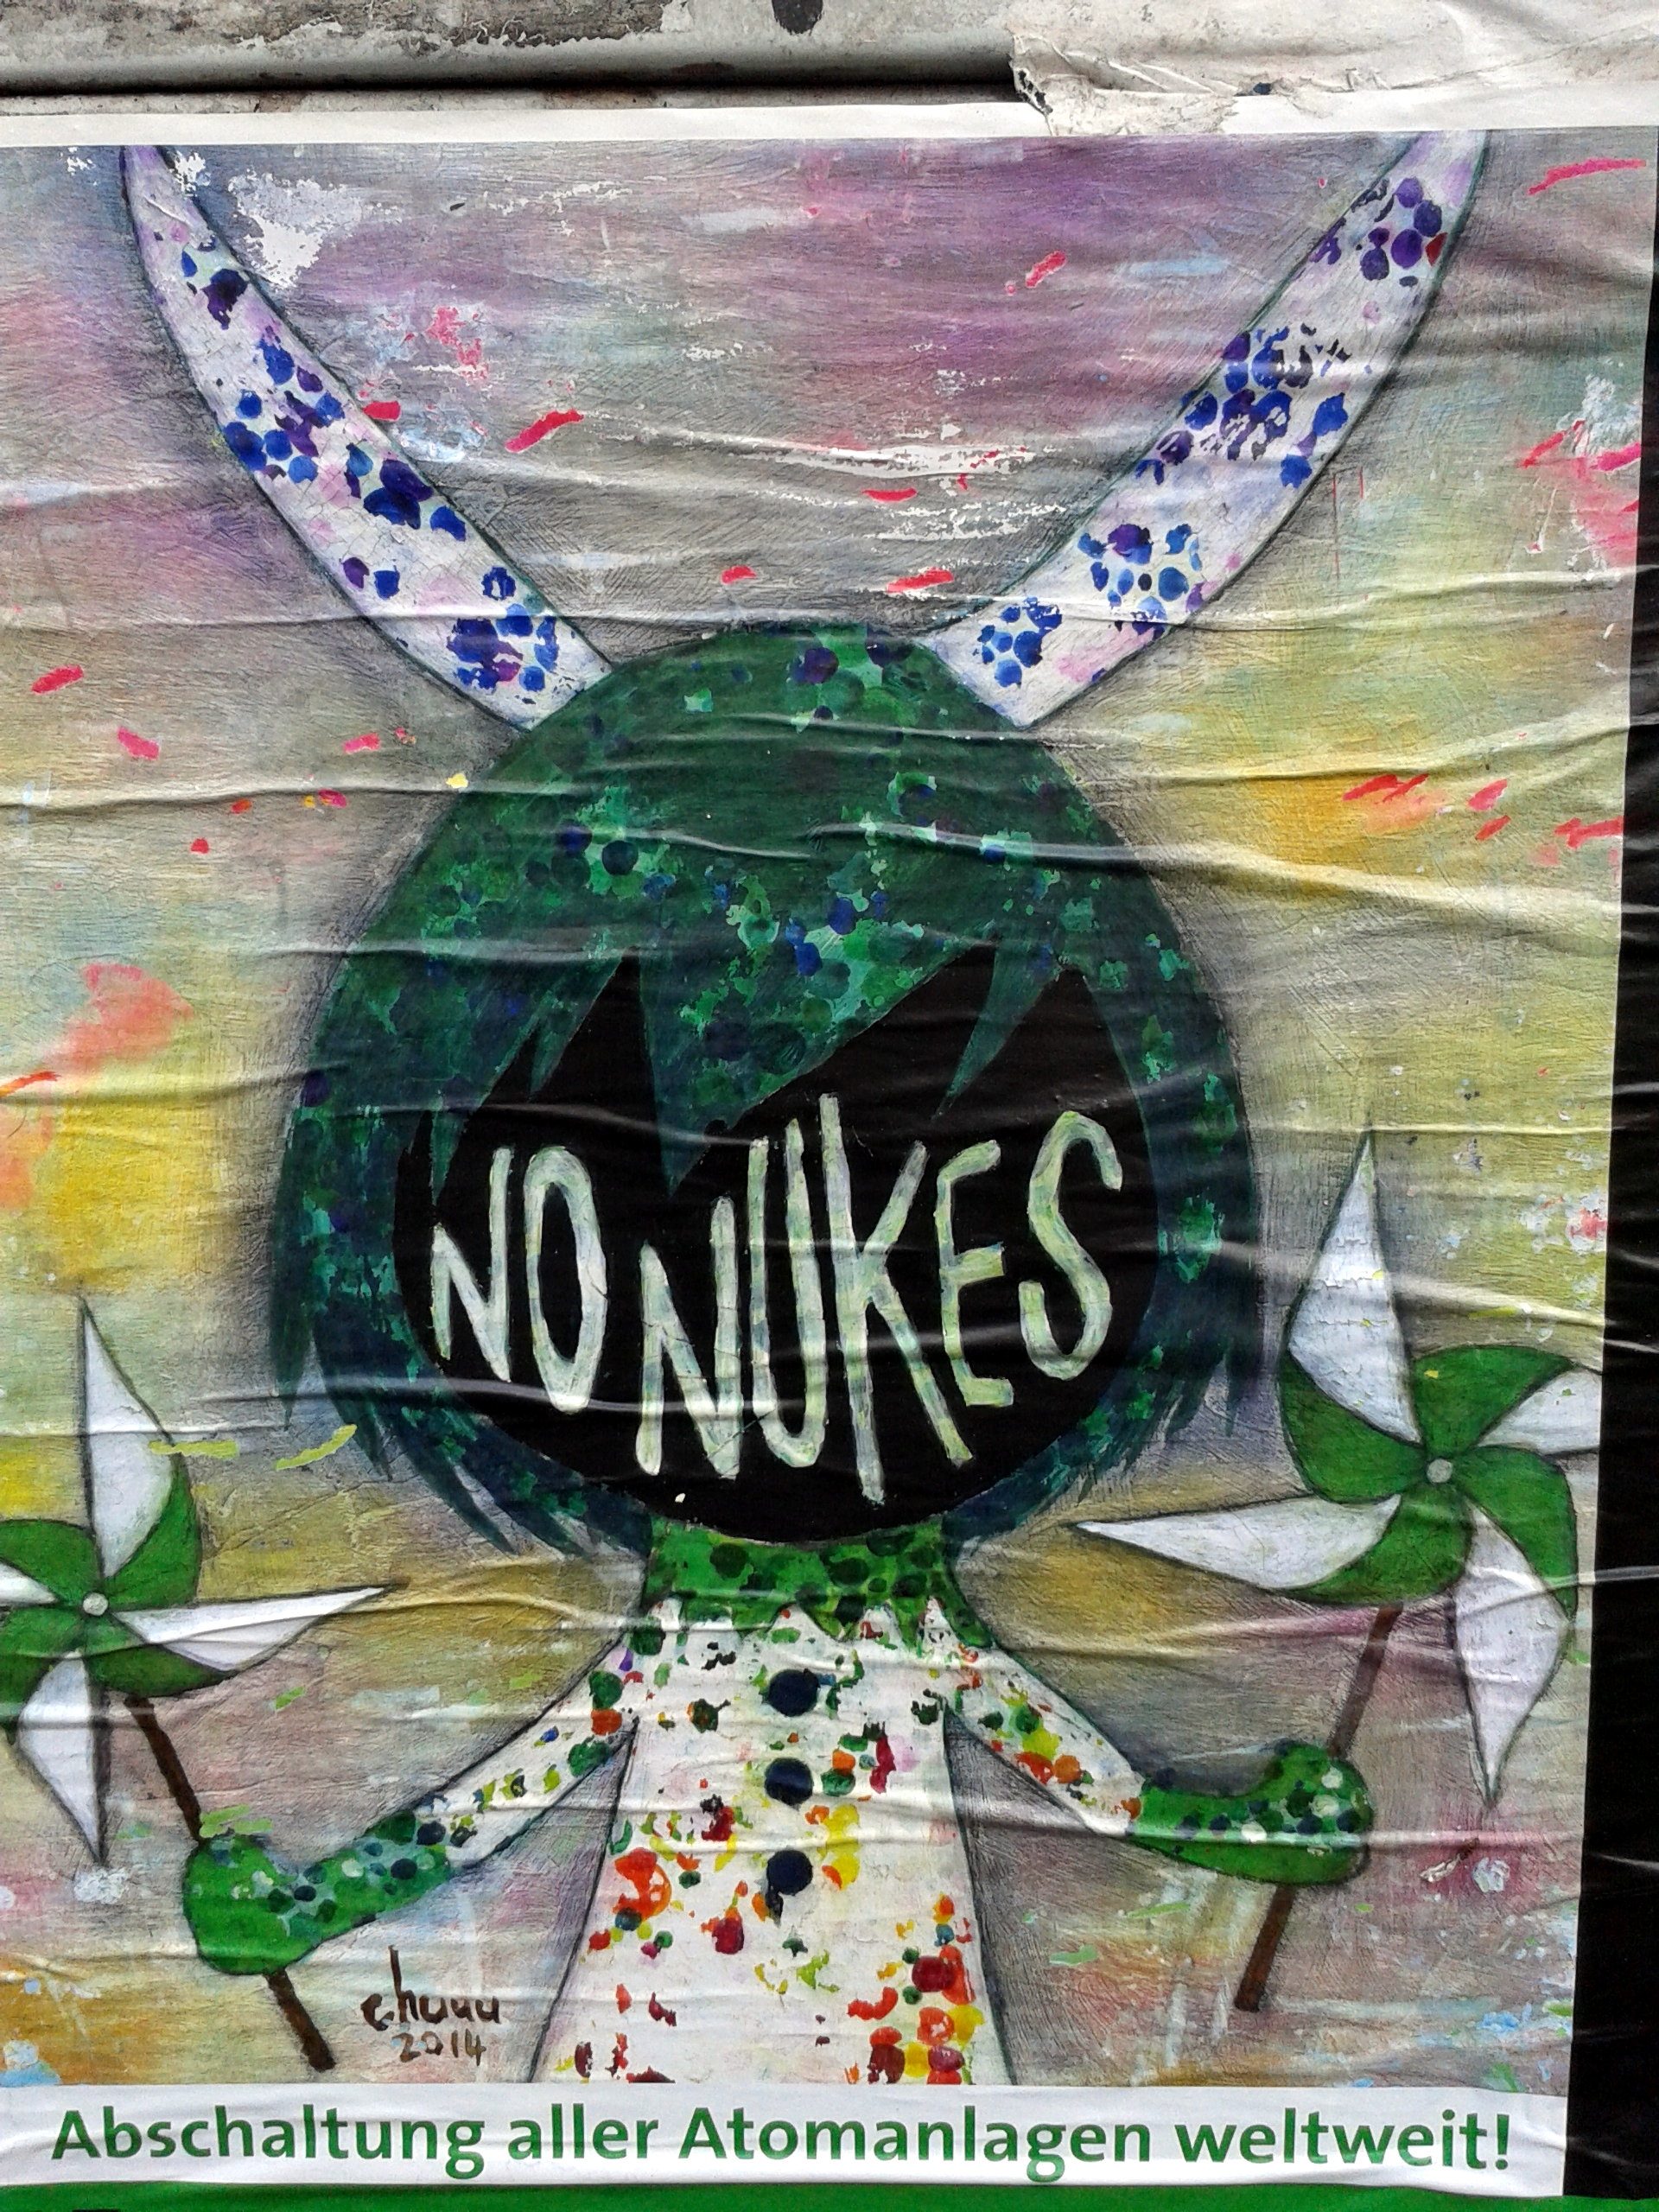 No nukes street art in Berlin.